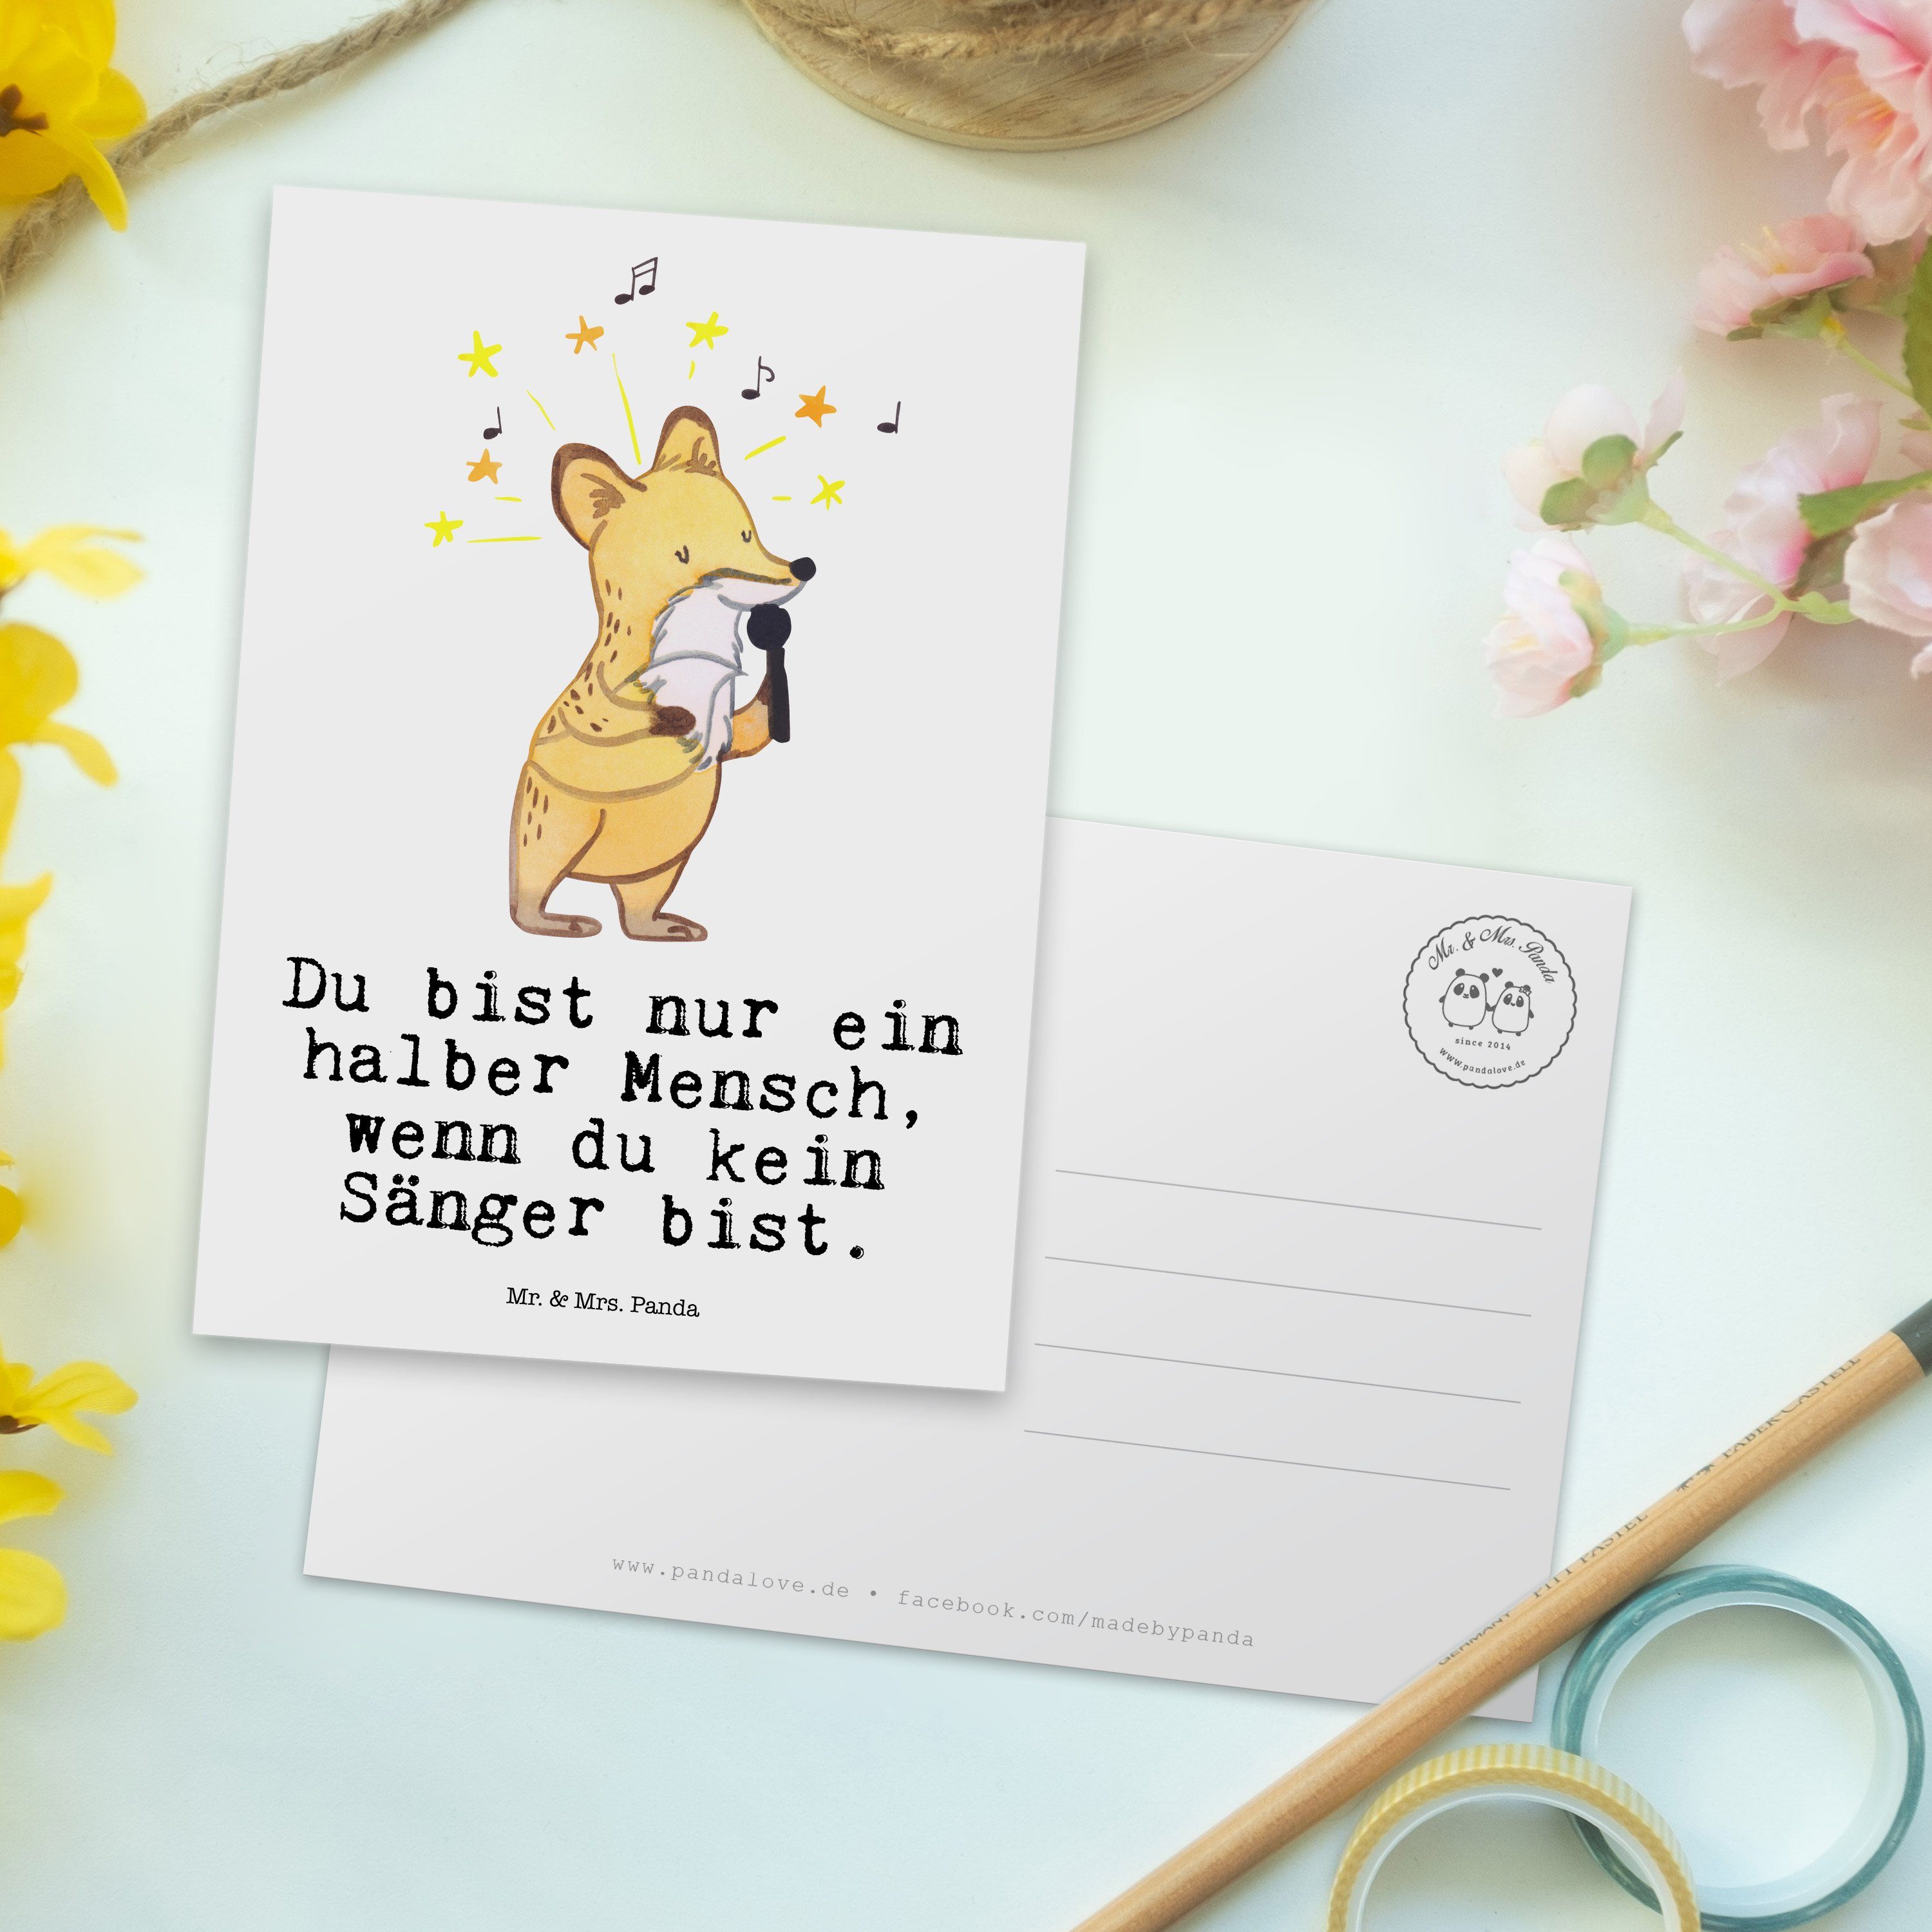 Mr. & Mrs. Panda Ansichtskarte, mit Sänger Postkarte - Herz - Karte, Weiß Einladung, Geschenk, G